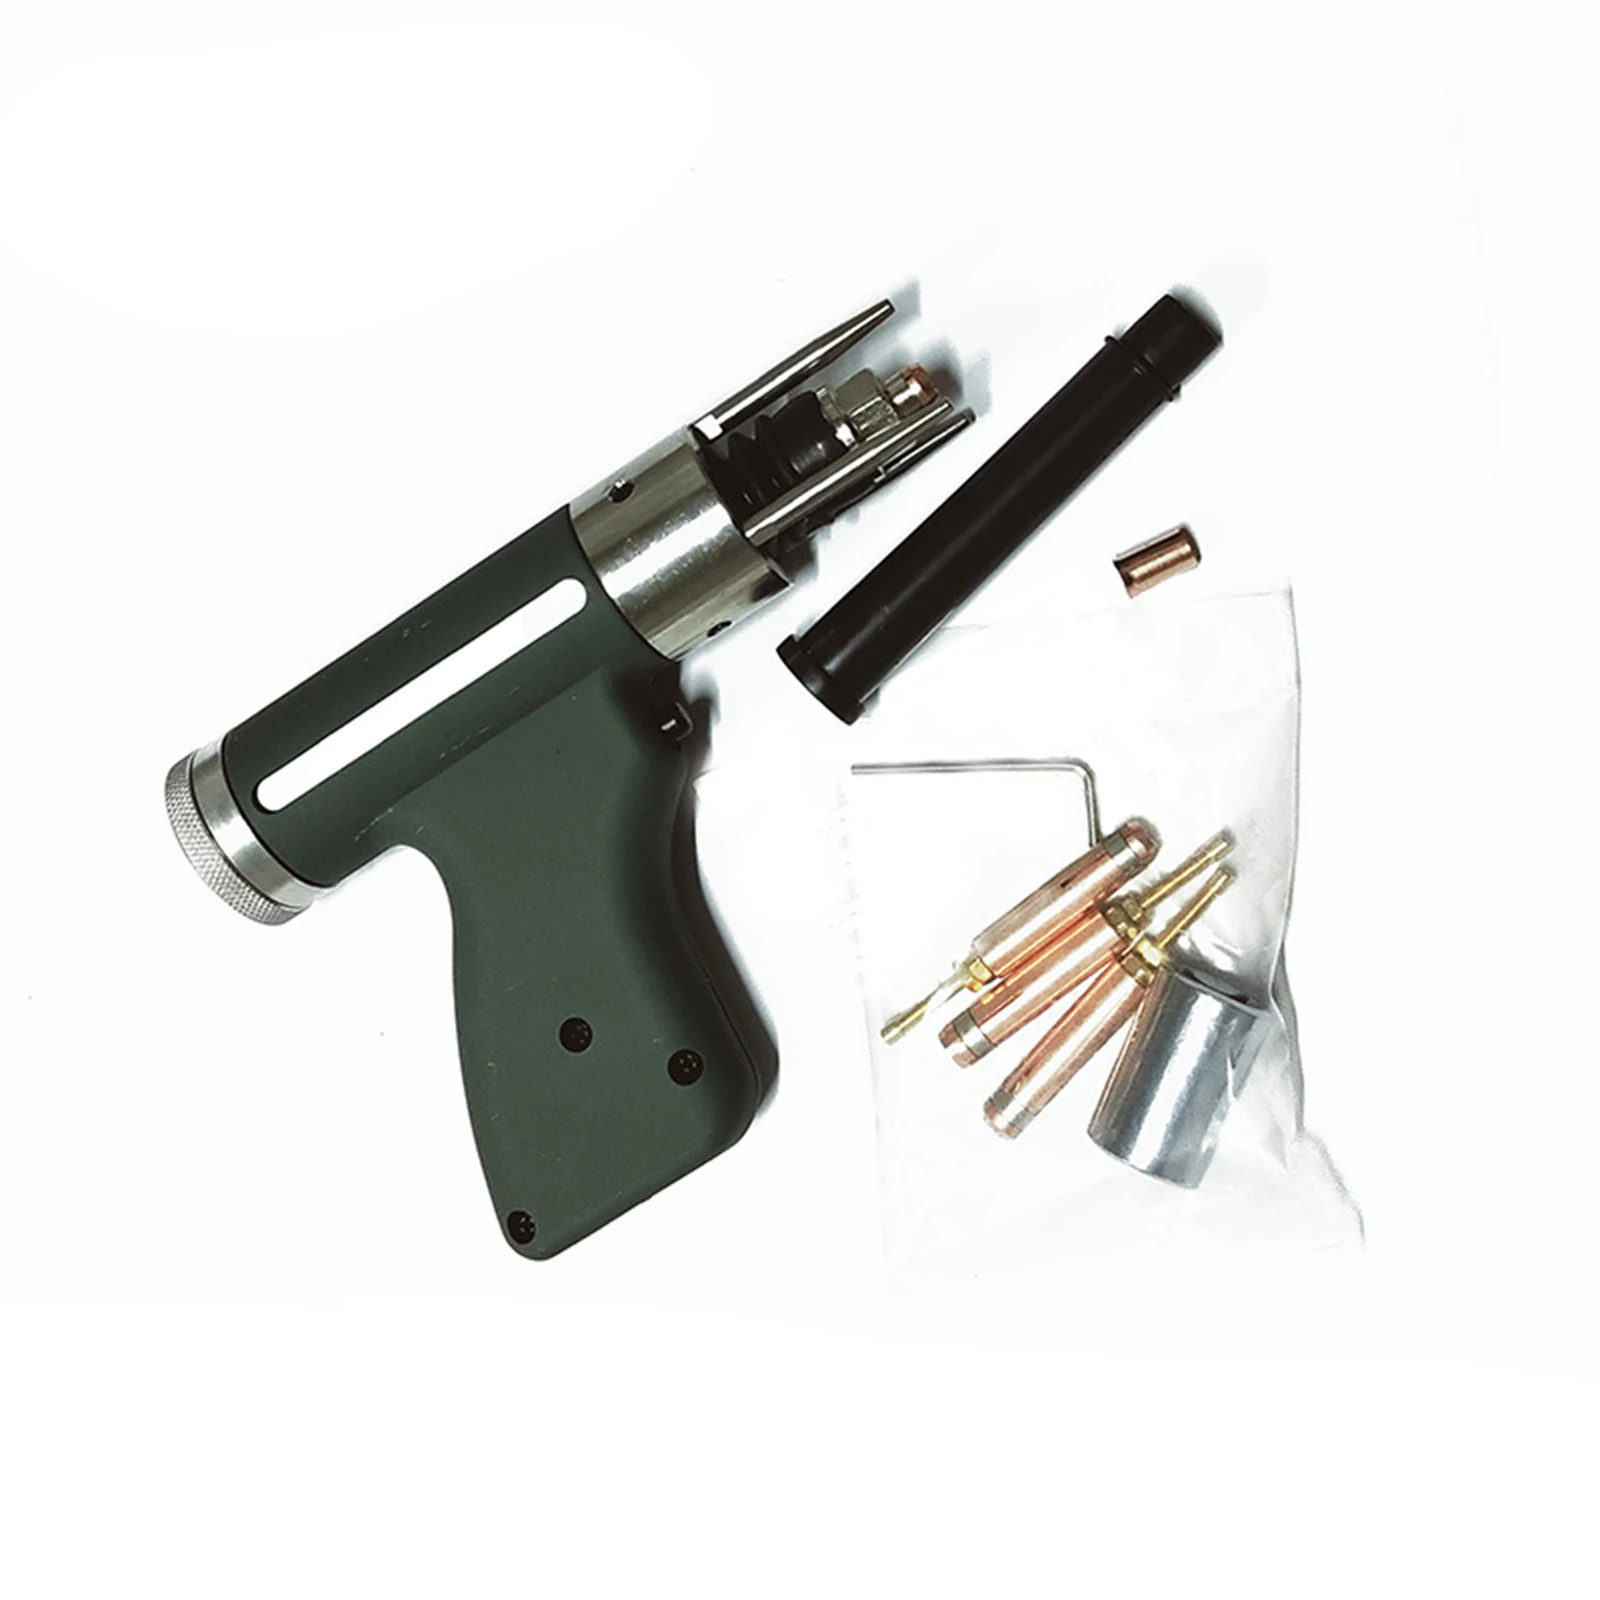 Capacitor Discharge (CD) Stud Welding Gun Welding Torch M3 To M10 Collet Tools Black